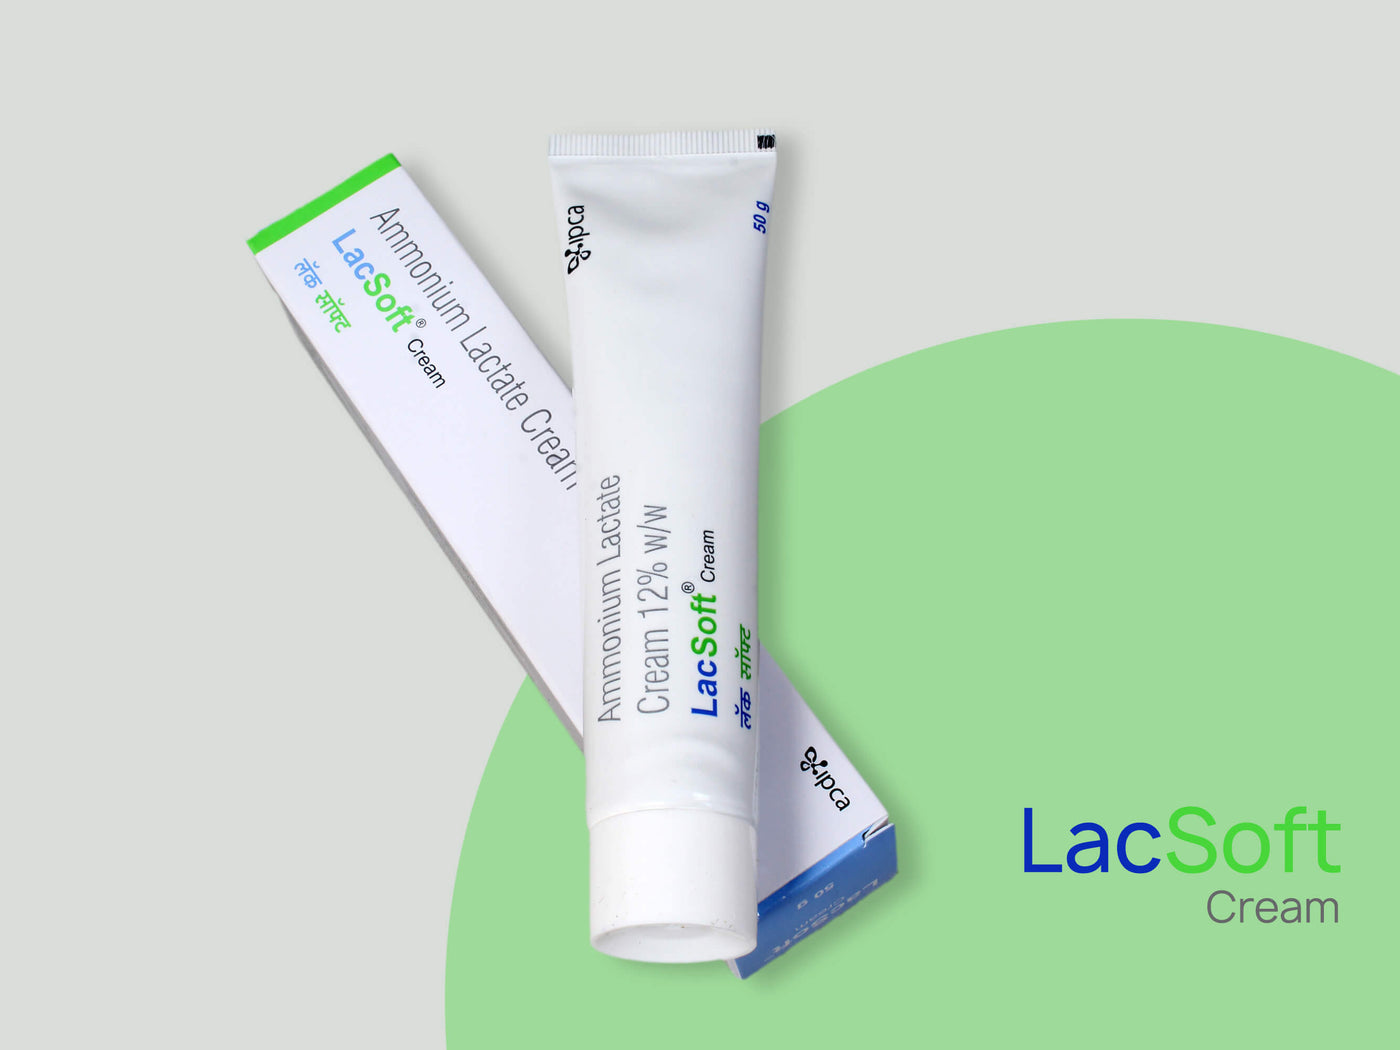 Ipca Lacsoft Cream - Clinikally